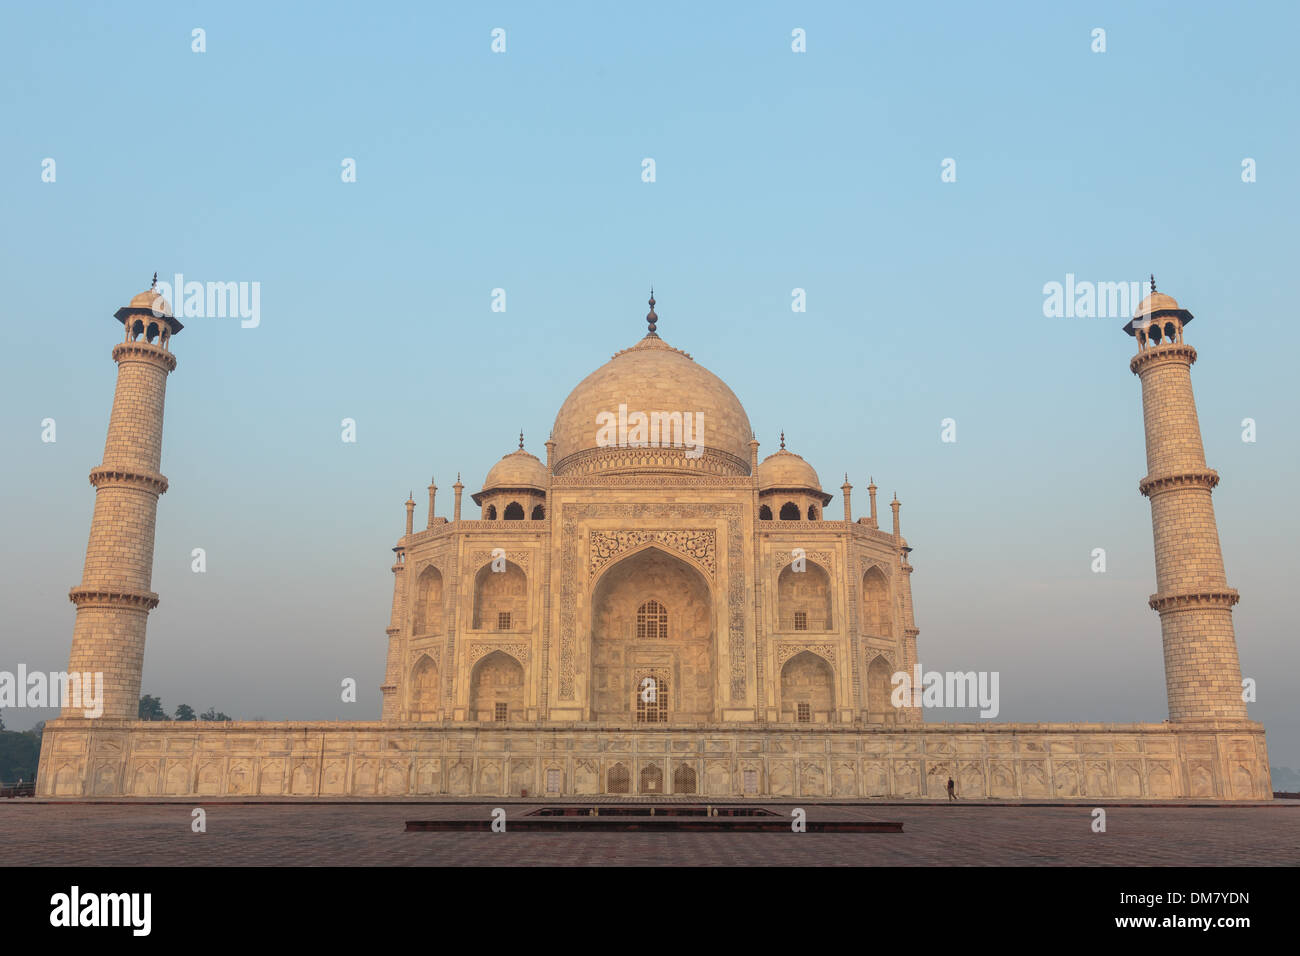 La splendida architettura indo-islamica del Taj Mahal è completata dalla luce soffusa dell'alba sul palazzo di Agra, in India. Foto Stock